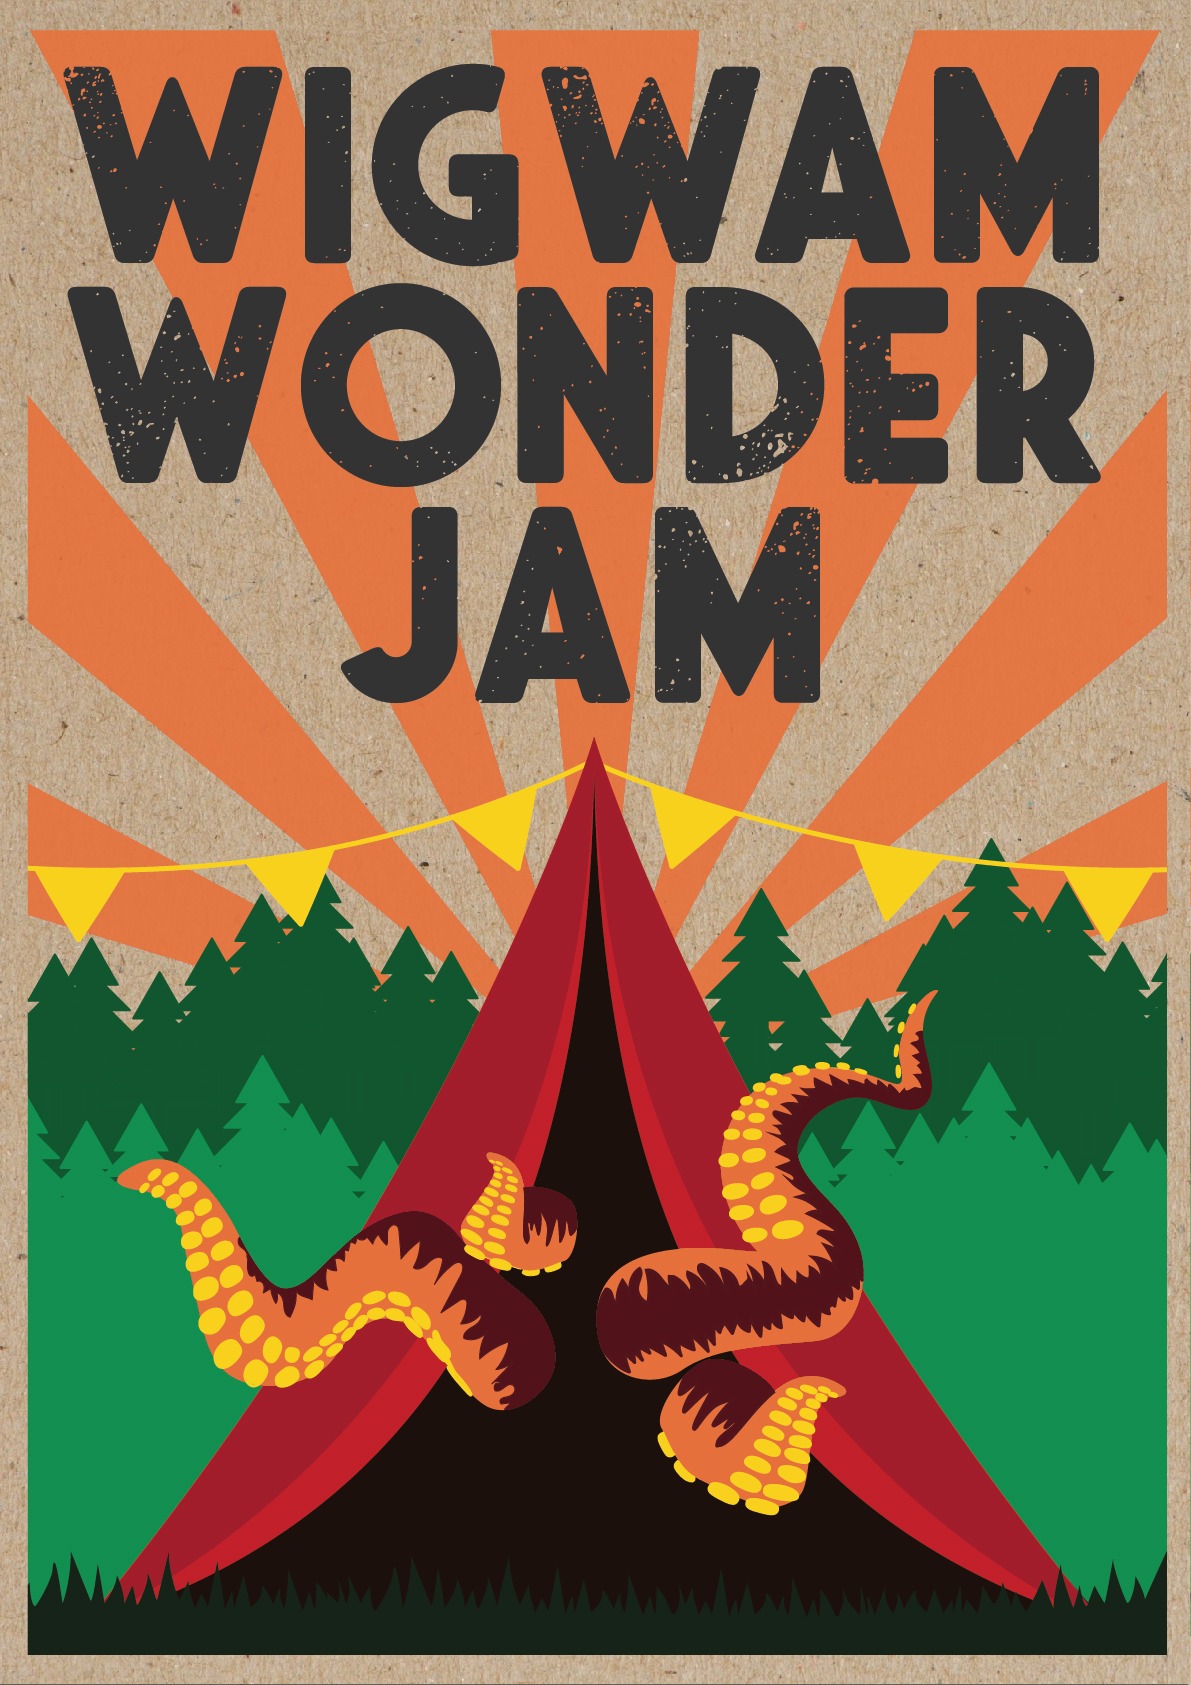 The poster for Wigwam Wonder Jam